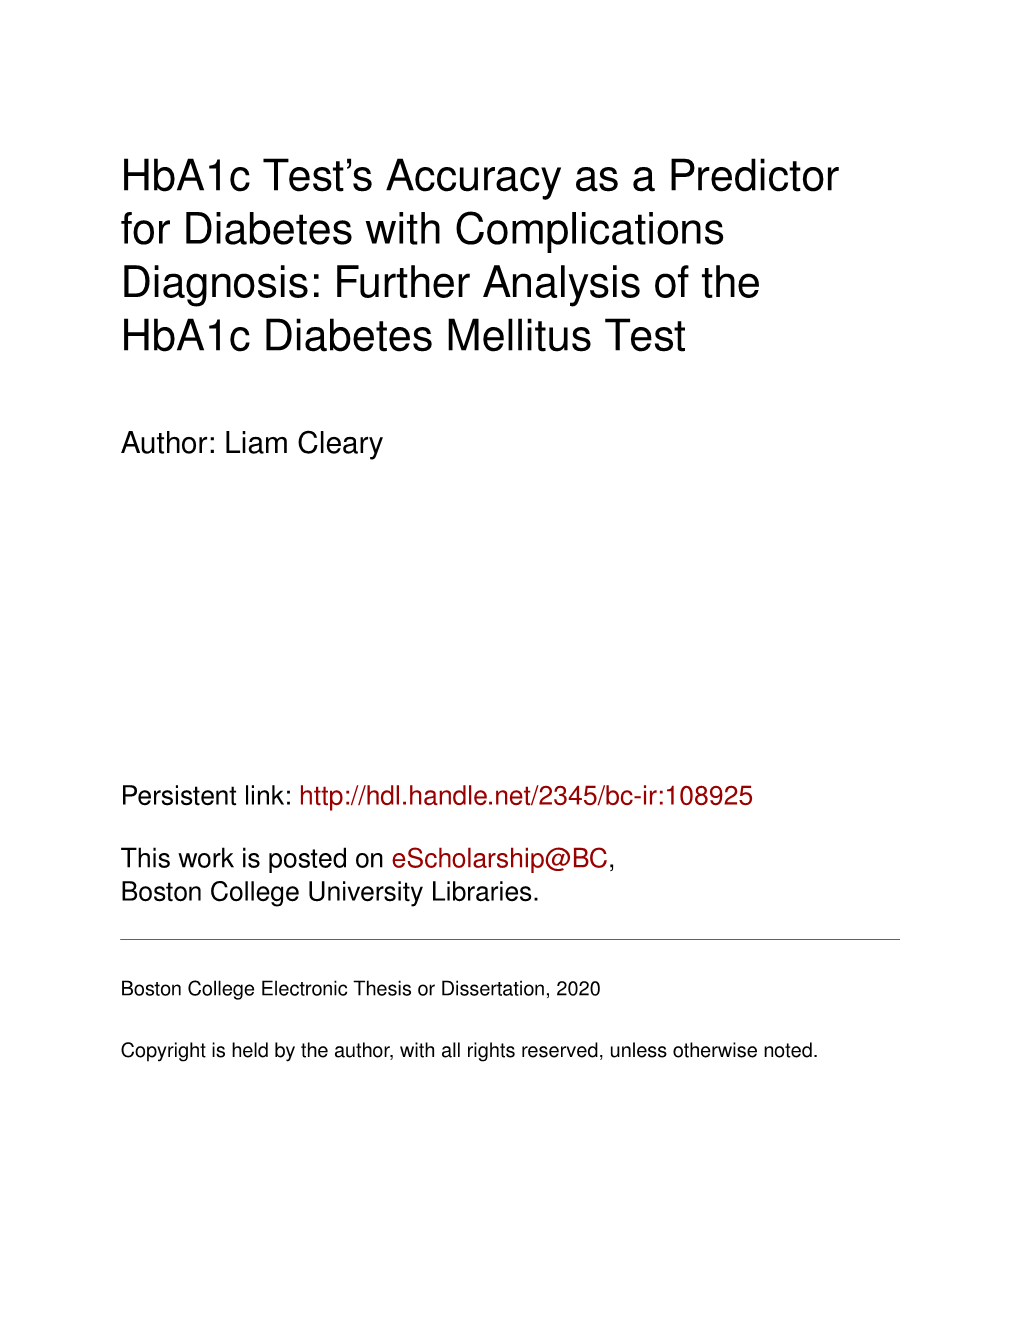 Further Analysis of the Hba1c Diabetes Mellitus Test